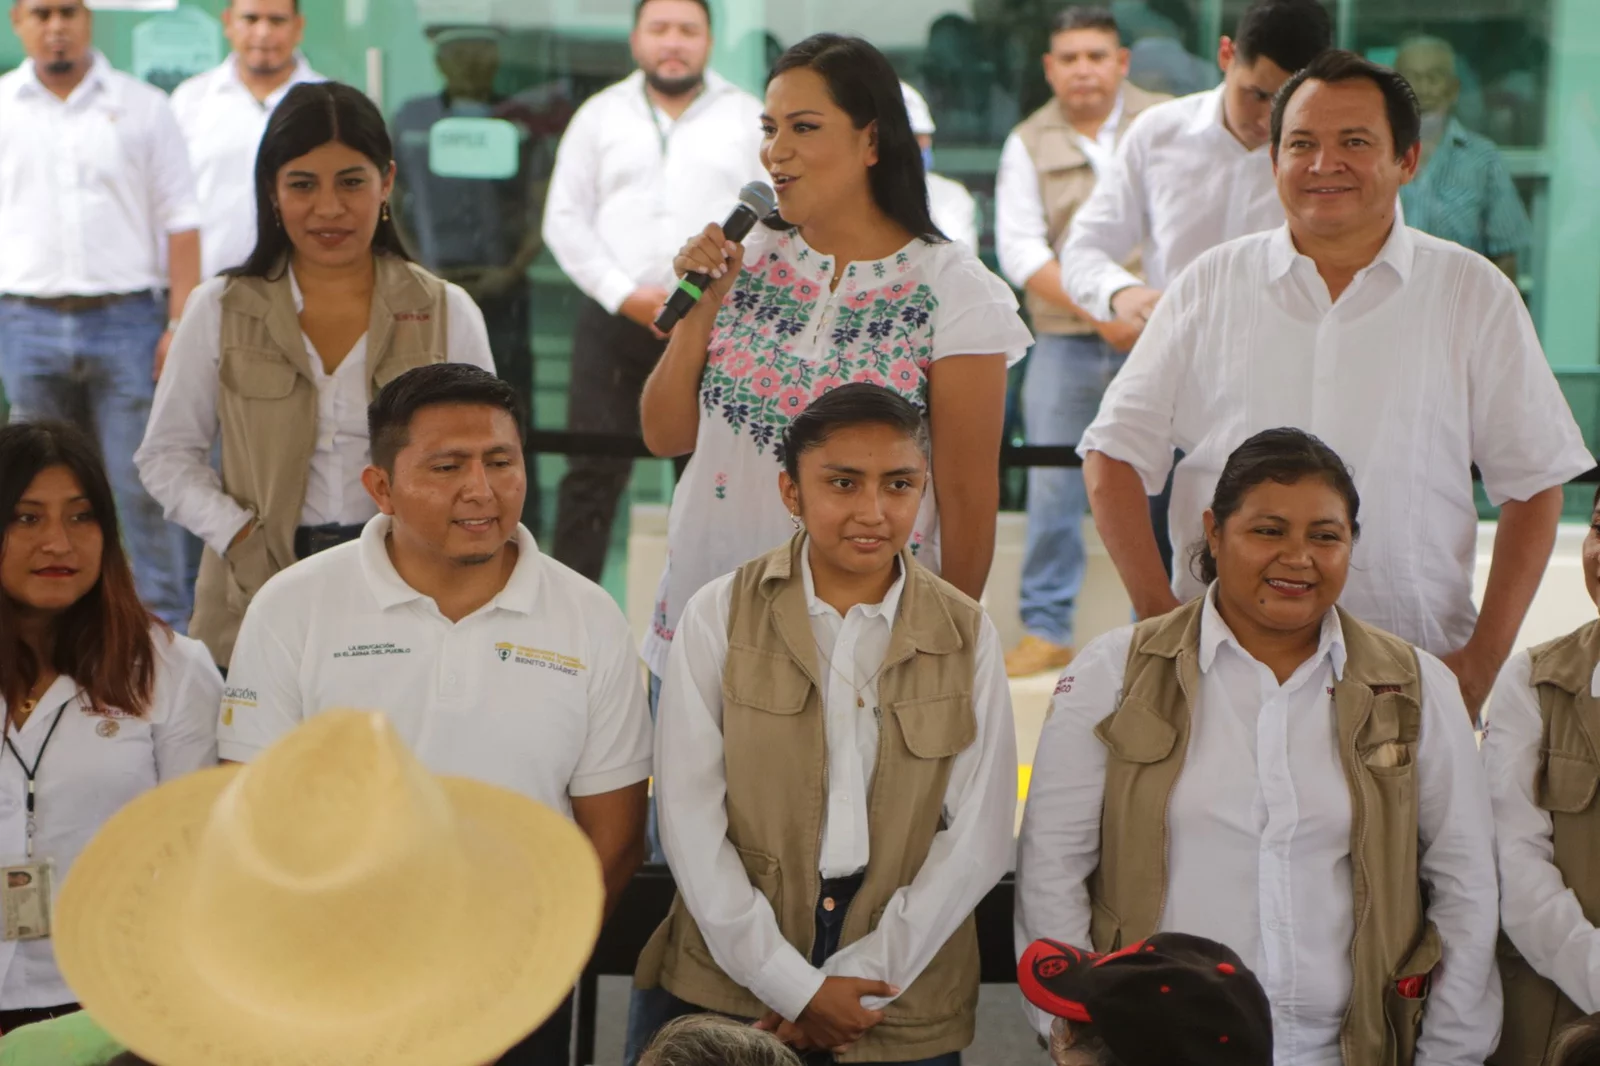 En Yucatán ha disminuido la pobreza: el gobierno ha entregado apoyos a miles de yucatecos